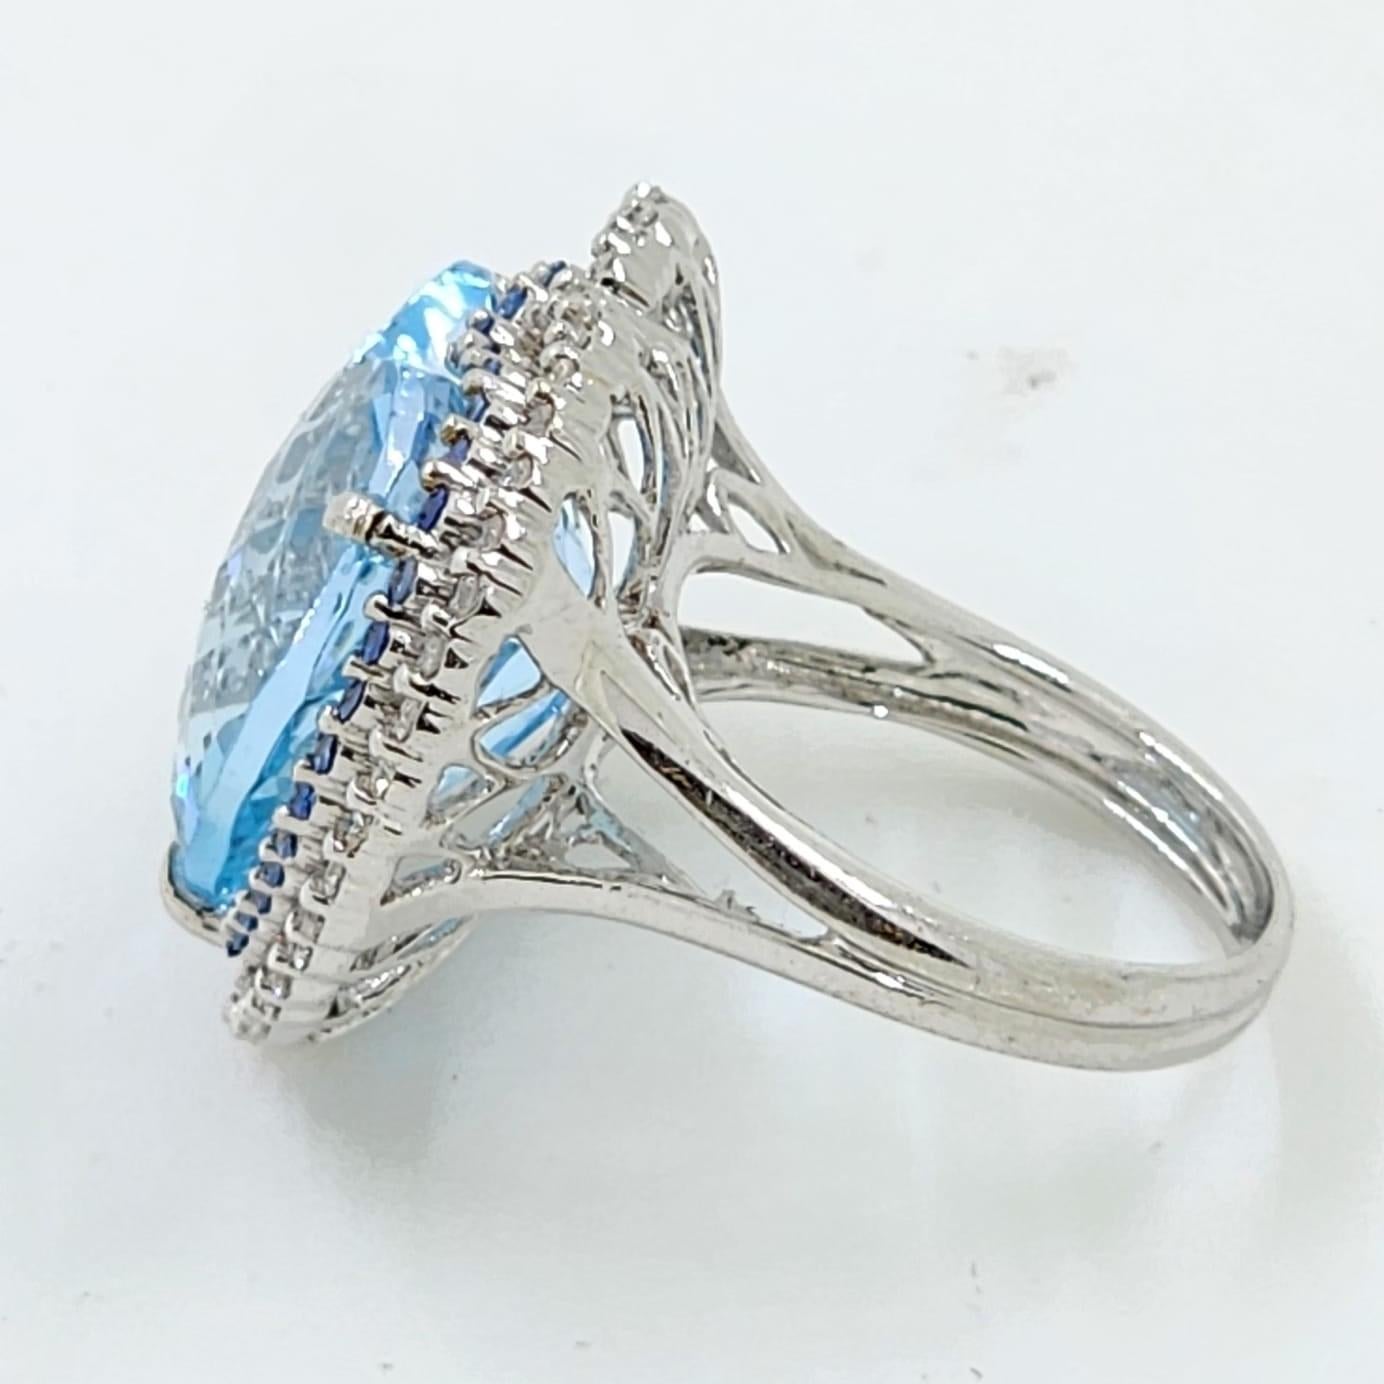 Dieser Ring enthält einen 19,68 Karat Blautopas, der in 2 Diamant-Halos eingefasst ist. Der erste Halo ist mit einem blauen Saphir von insgesamt 0,37 Karat besetzt. Der zweite Halo ist mit weißen runden Diamanten von insgesamt 0,39 Karat besetzt.